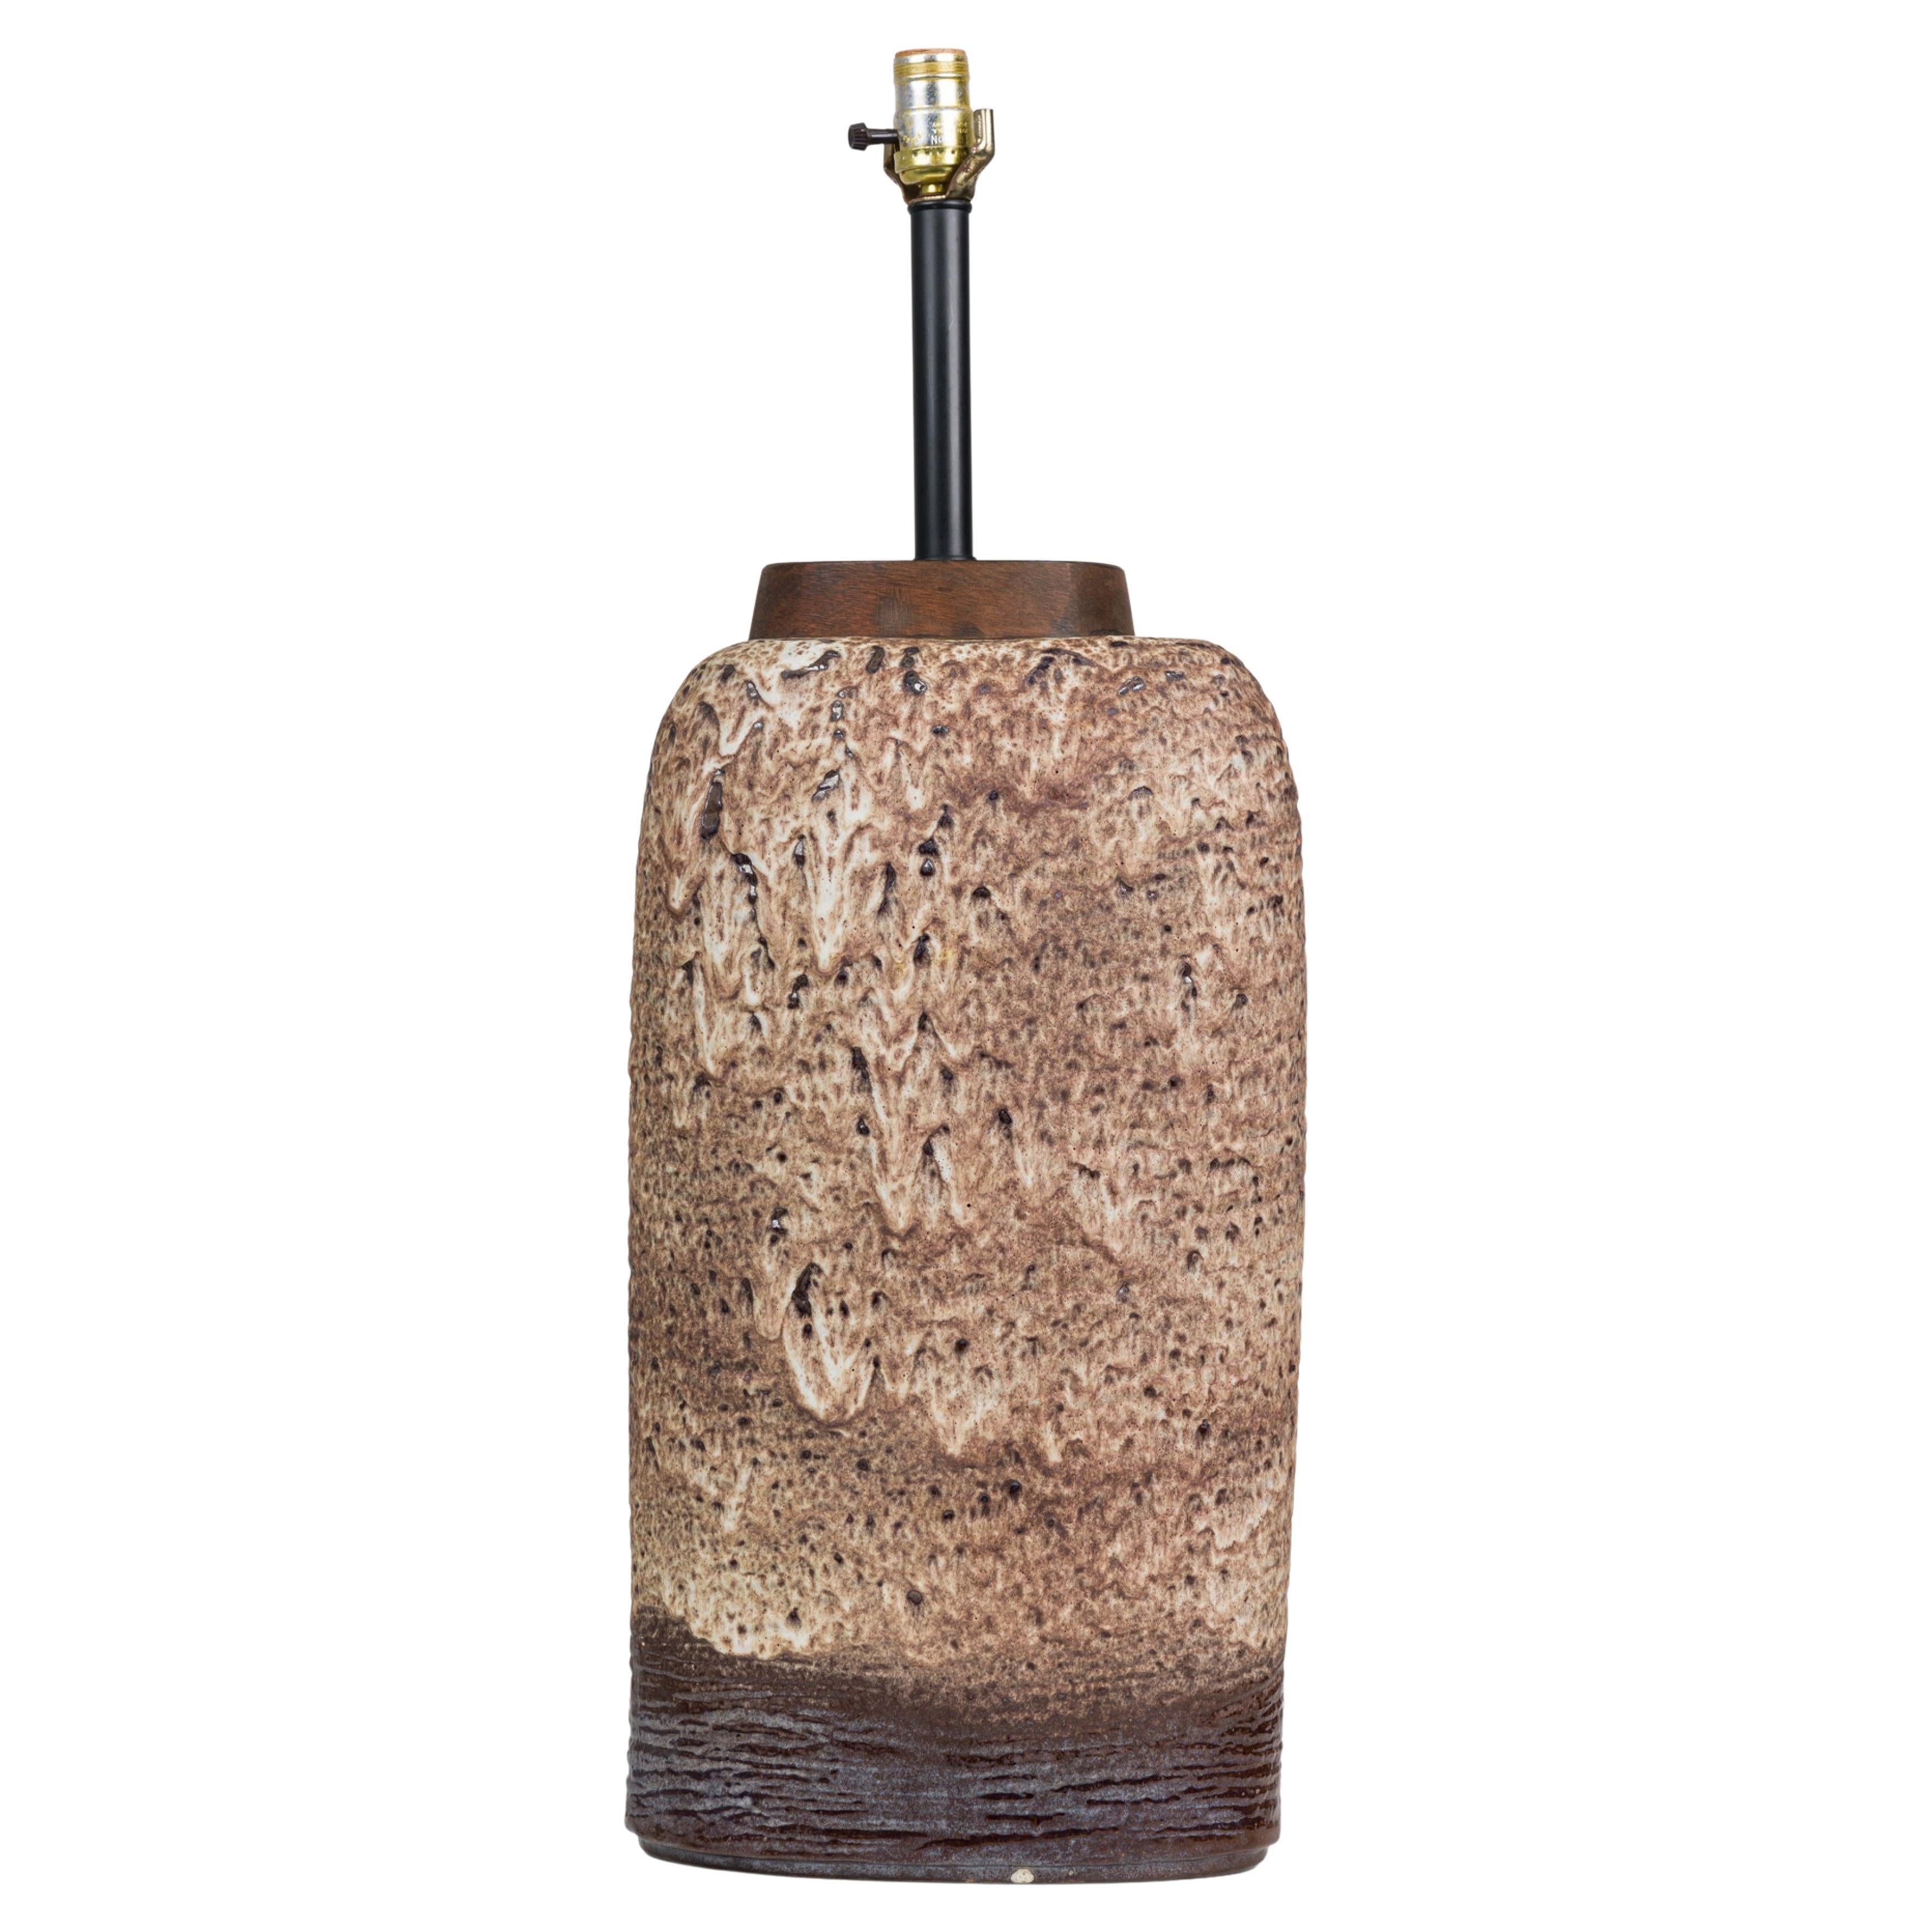 Lampe de table Carstens en céramique ouest-allemande du milieu du siècle, émaillée de lave grasse taupe